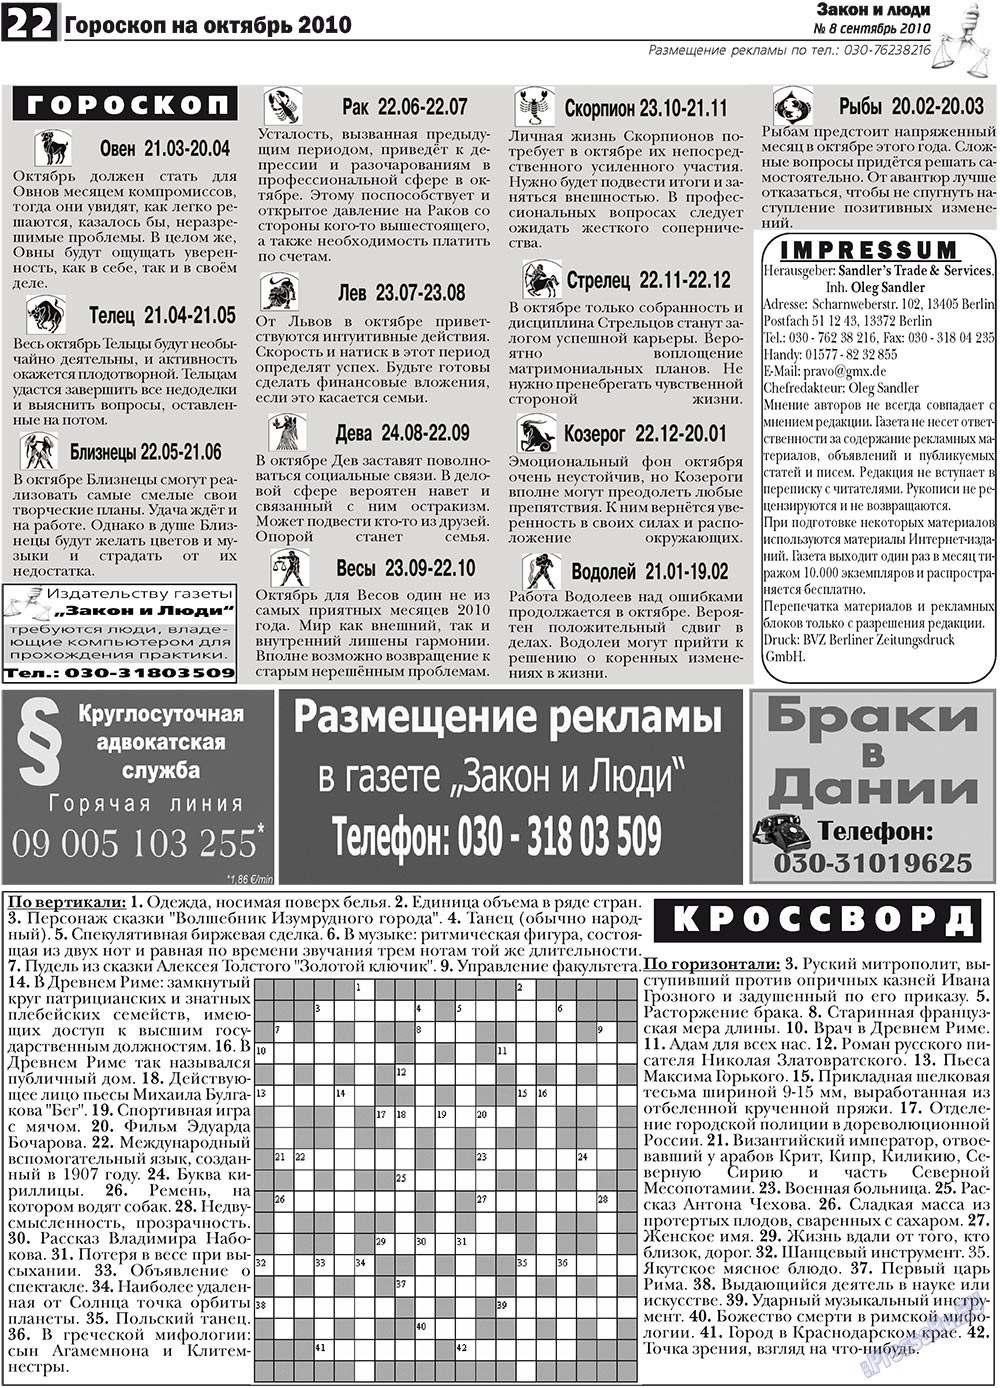 Закон и люди, газета. 2010 №8 стр.22